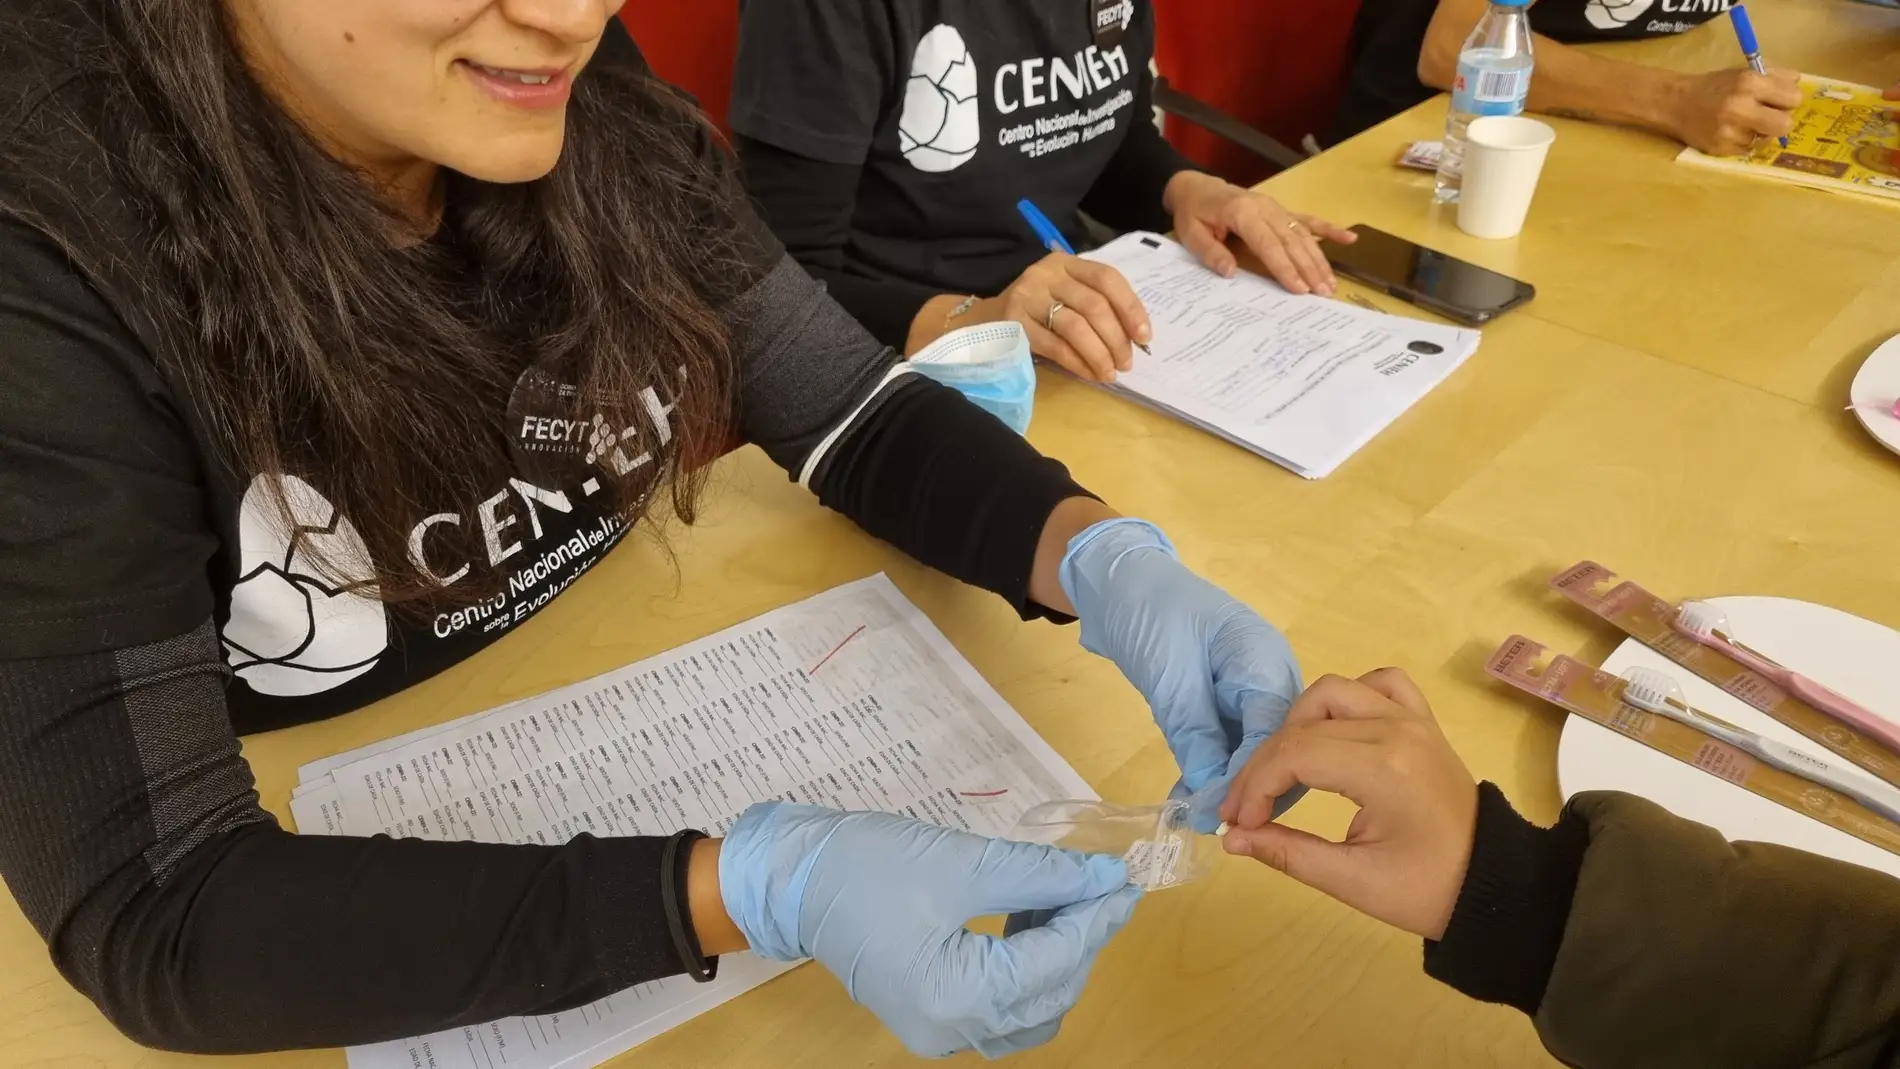  La UCLM se suma al proyecto científico “Colección Ratón Pérez” con una recogida de dientes de leche de niños